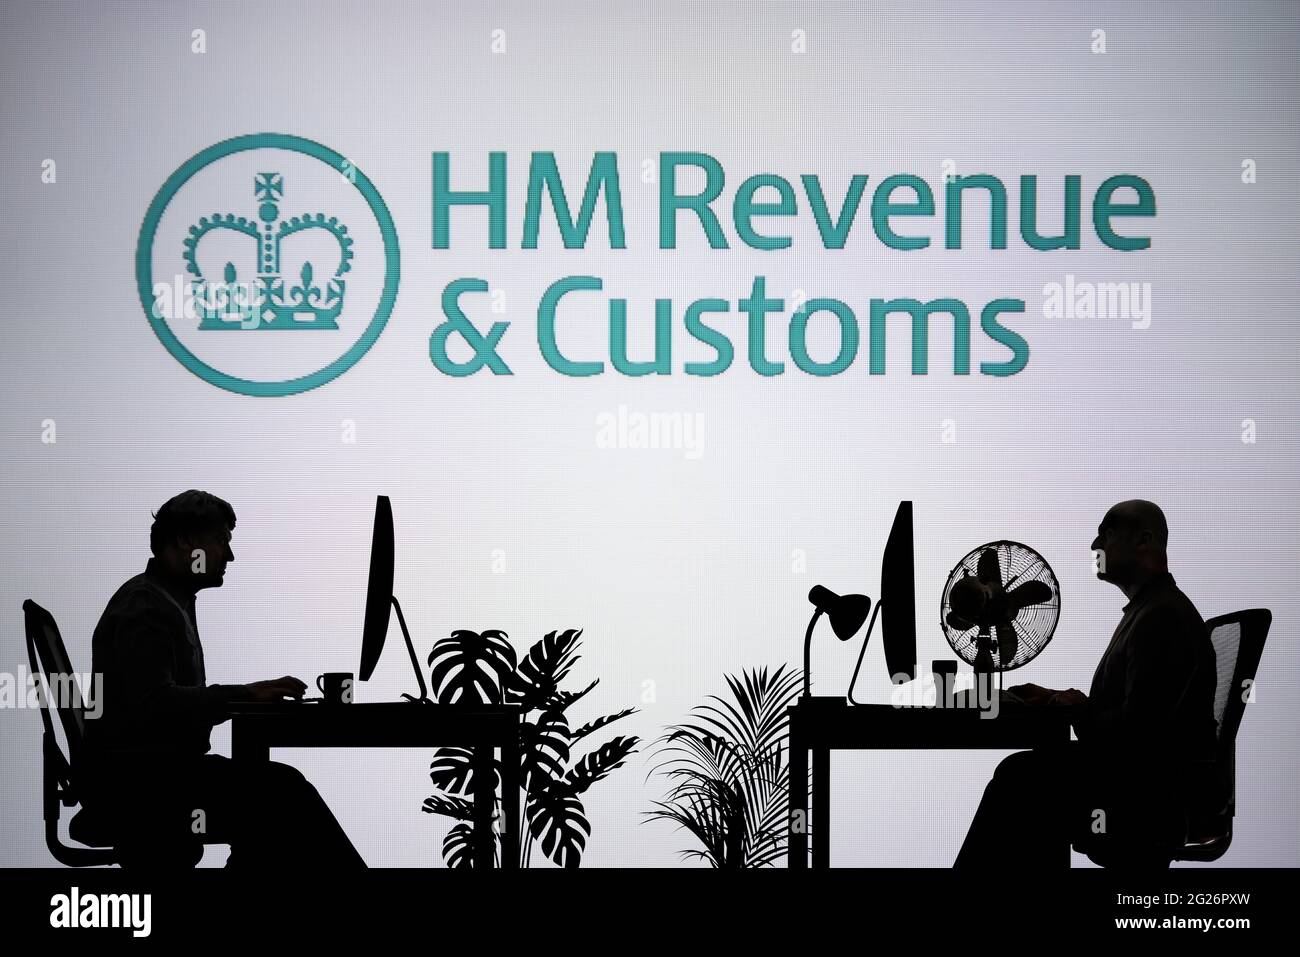 Das HMRC-Logo ist auf einem LED-Bildschirm im Hintergrund zu sehen, während zwei silhouettierte Personen in einer Büroumgebung arbeiten (nur zur redaktionellen Verwendung) Stockfoto